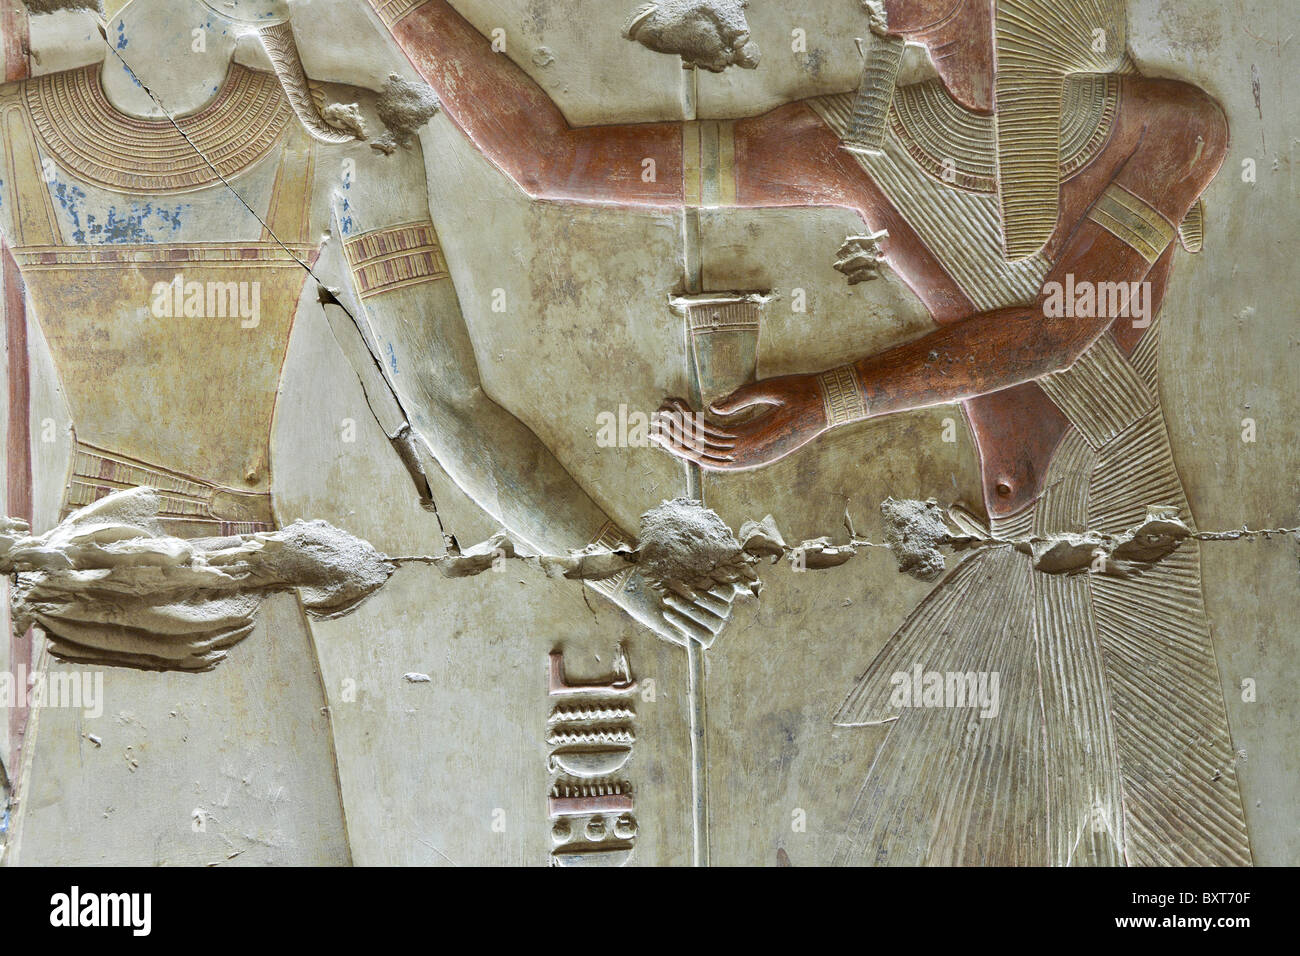 Nahaufnahme der beschädigten Erleichterung bieten innerhalb der Tempel von Sethos ich in Abydos, alten Abdju, Niltal Ägyptens Stockfoto